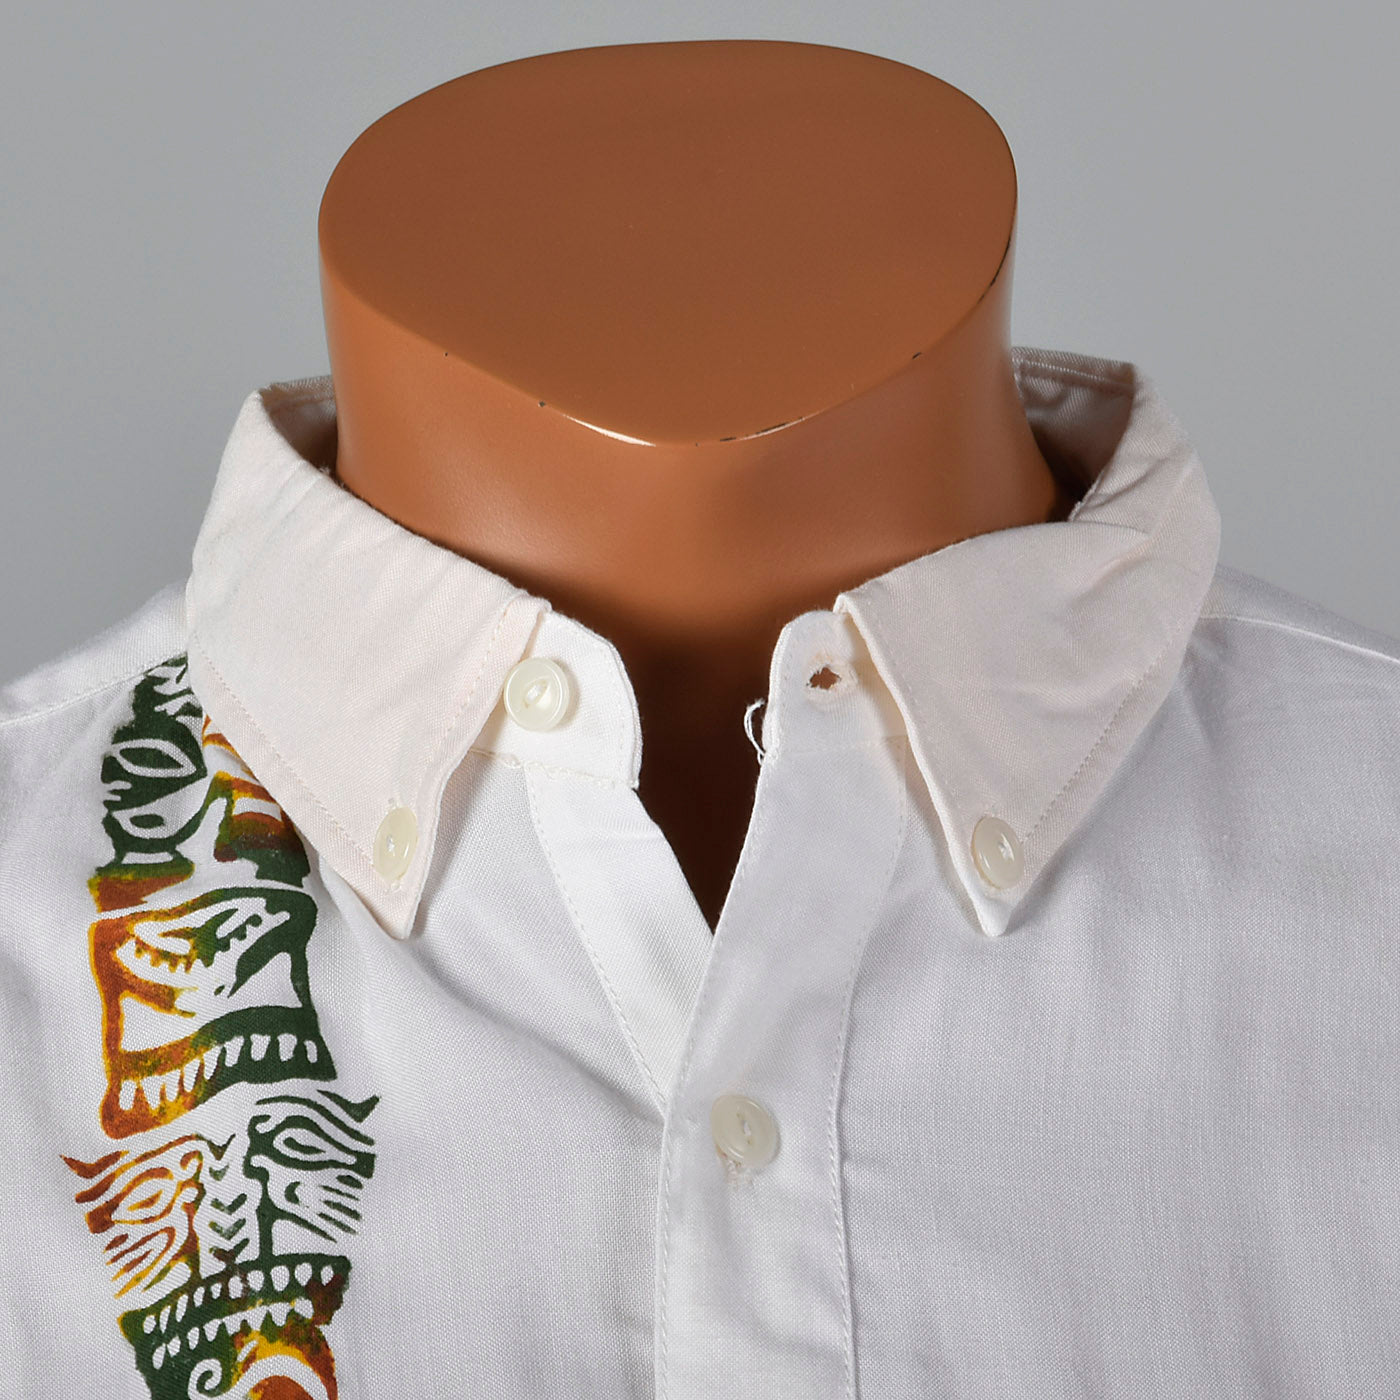 1960s Bali Hai Uniform Shirt